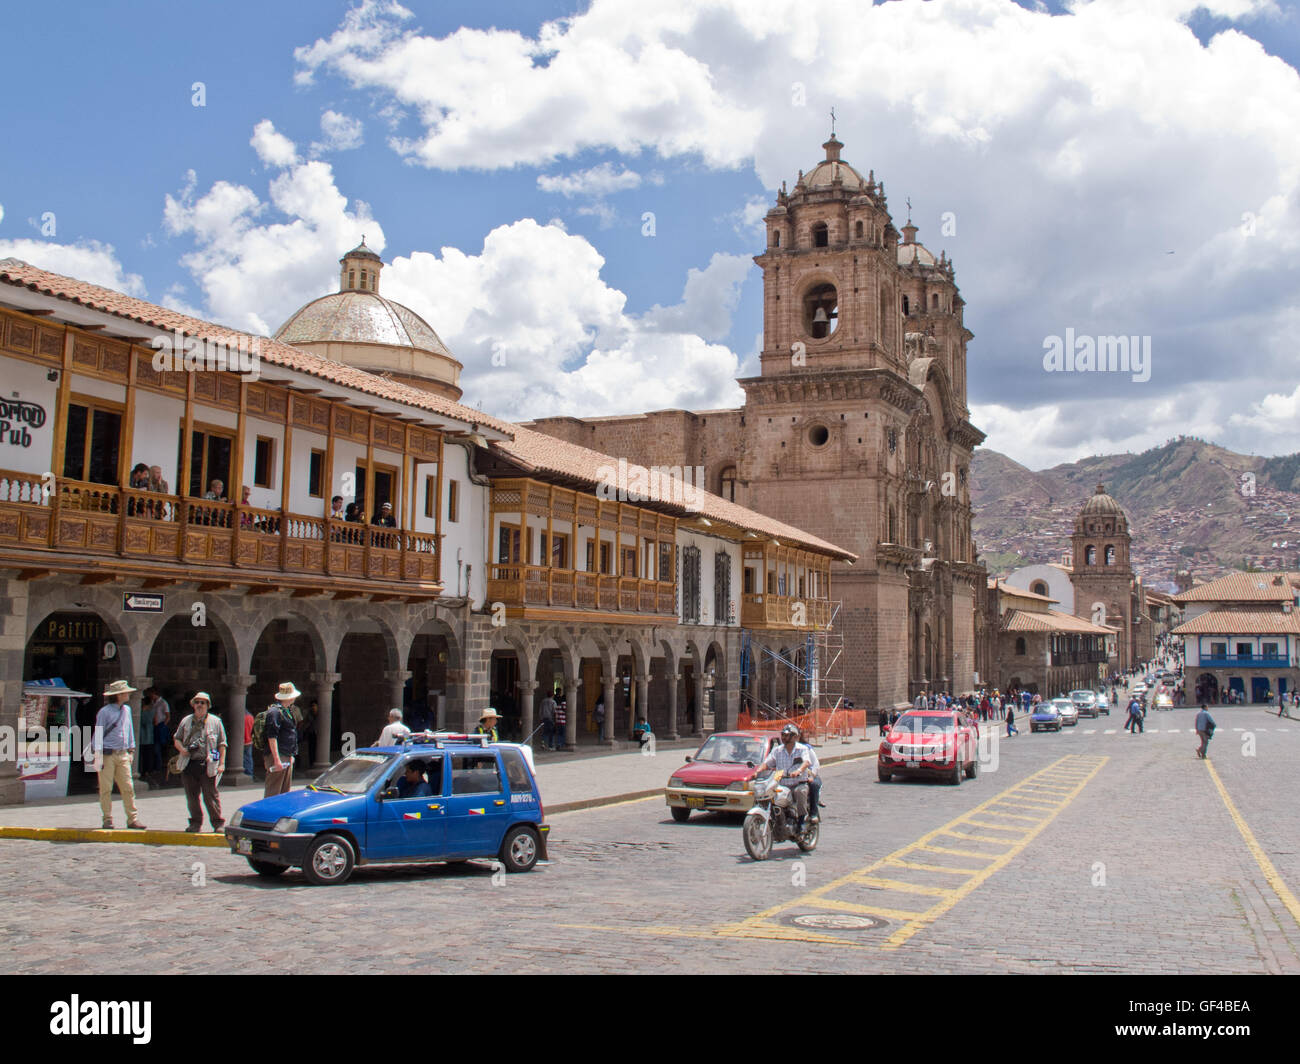 The modern shops and  Cuzco Church on Plaza de Armas Stock Photo